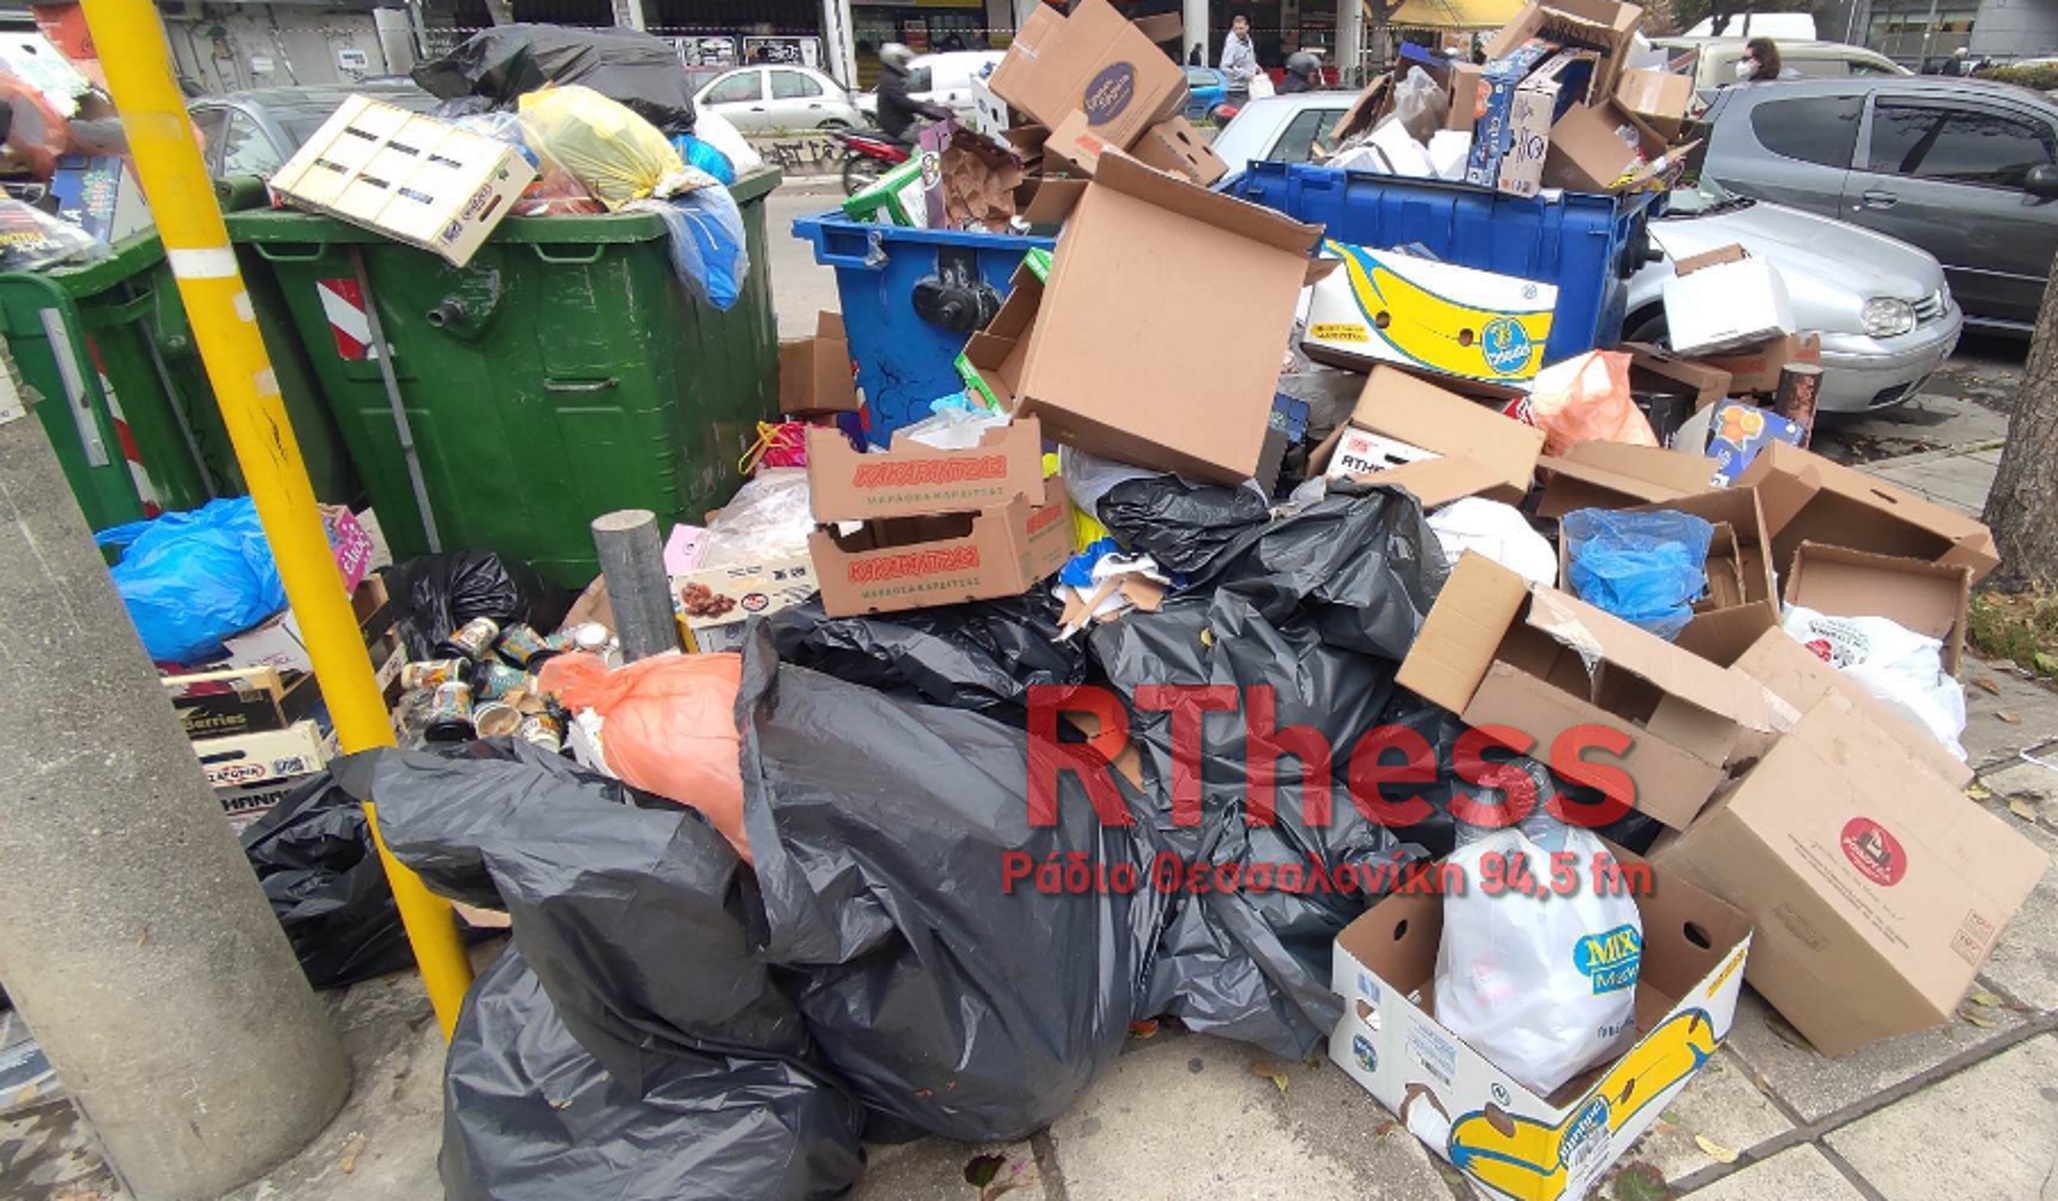 Θεσσαλονίκη: Γέμισε σκουπίδια λόγω απεργίας στην καθαριότητα – Ξεχειλισμένοι κάδοι, αφόρητη μυρωδιά